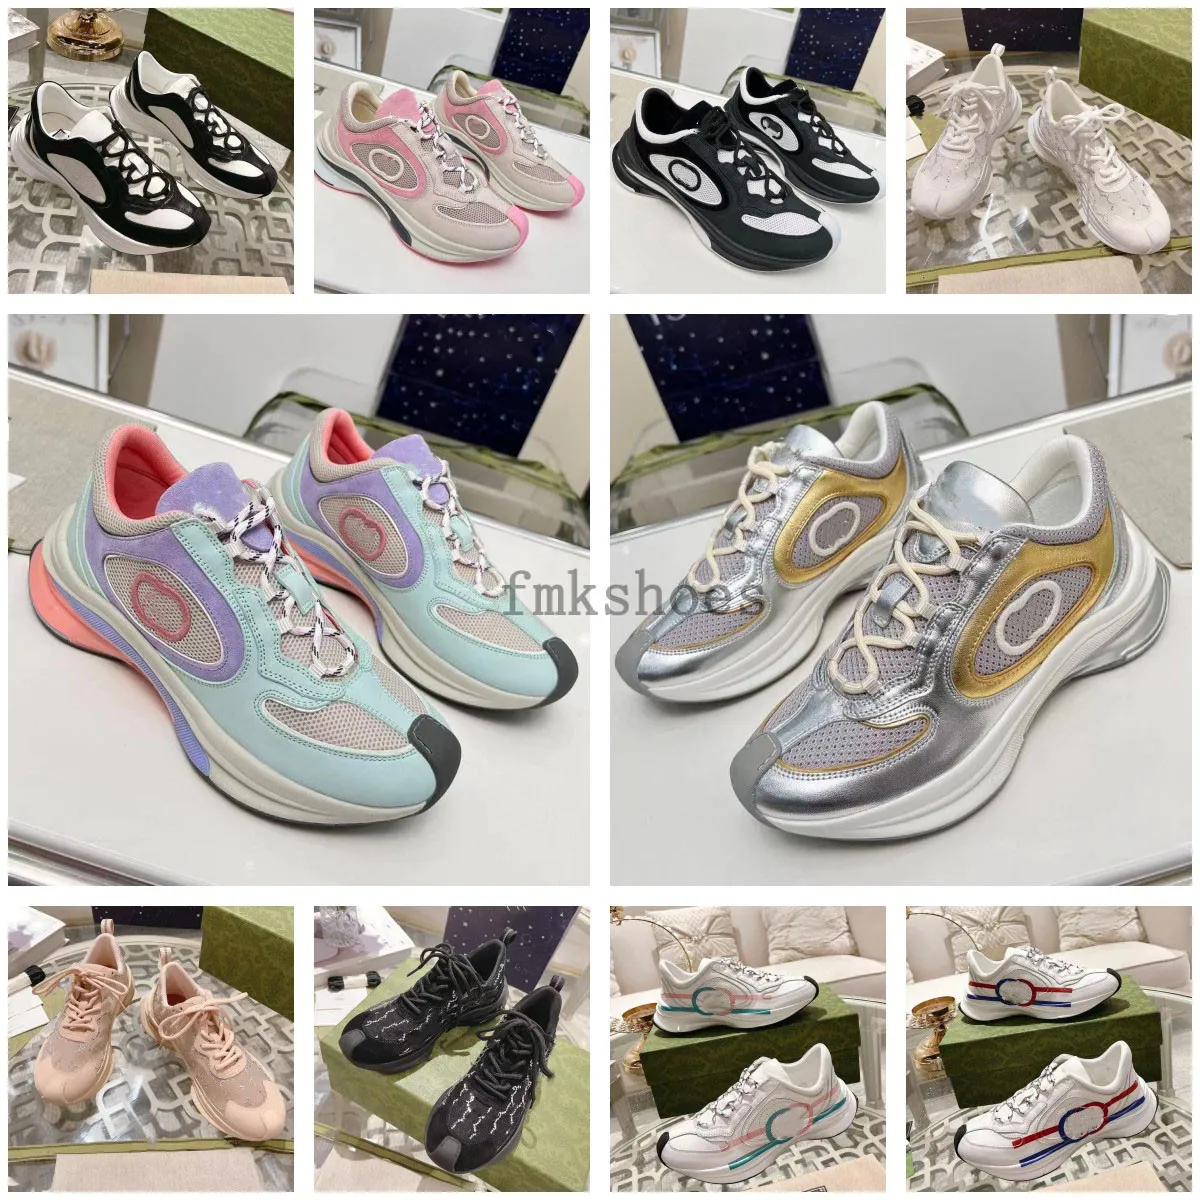 Luksusowe chaussures damskie buty rytonowe platforma trampki designerskie buty beżowe mężczyźni trenerzy projektanci vintage Run Sneaker Rozmiar 35-45 3.20 01